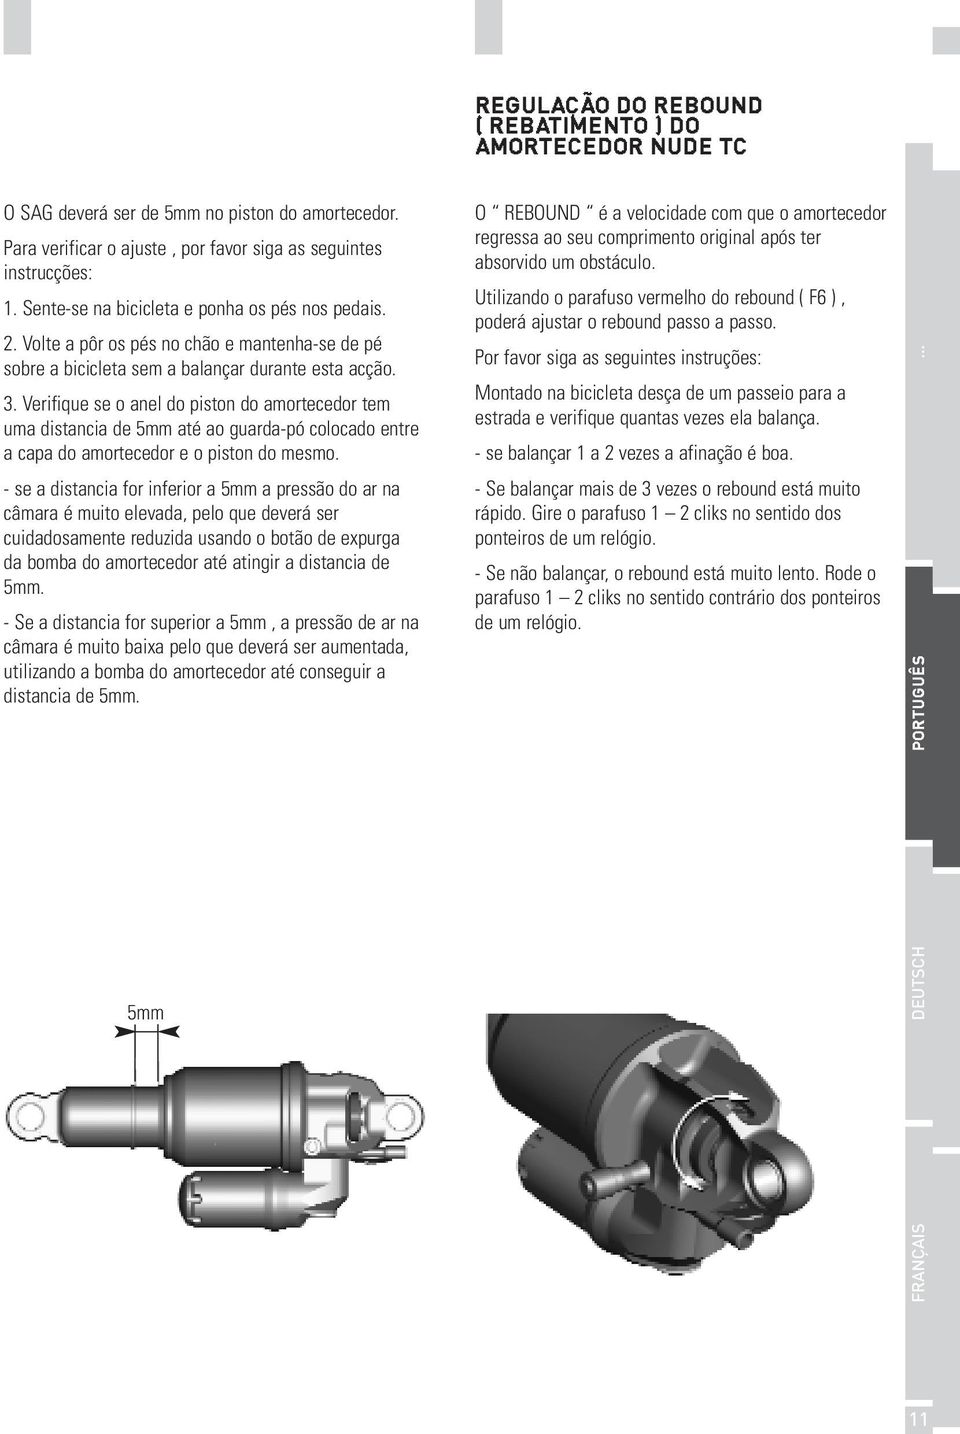 Verifique se o anel do piston do amortecedor tem uma distancia de 5mm até ao guarda-pó colocado entre a capa do amortecedor e o piston do mesmo.